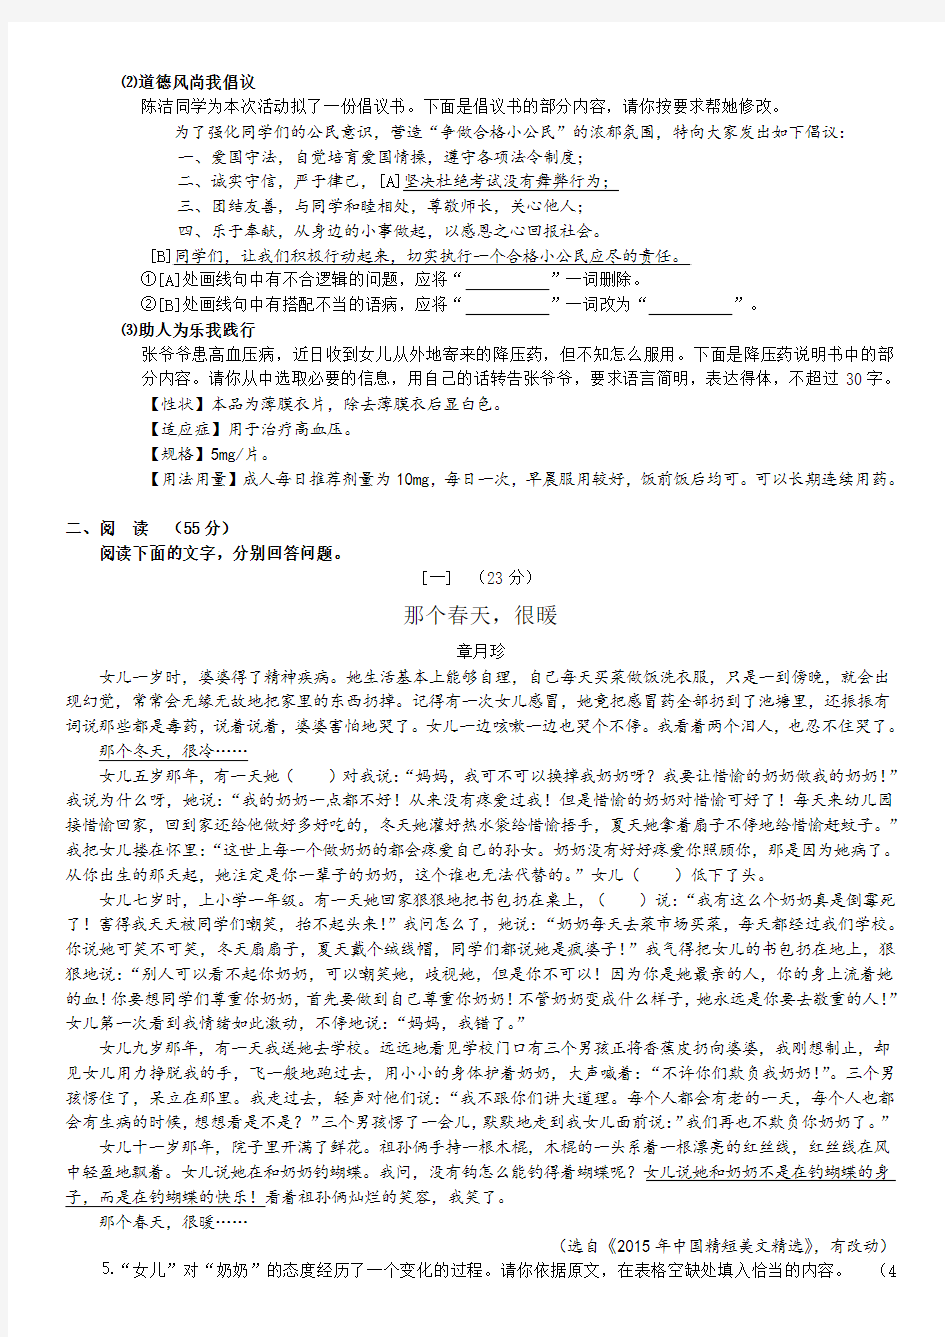 2016年安徽省中考语文试题(打印版,含答案)